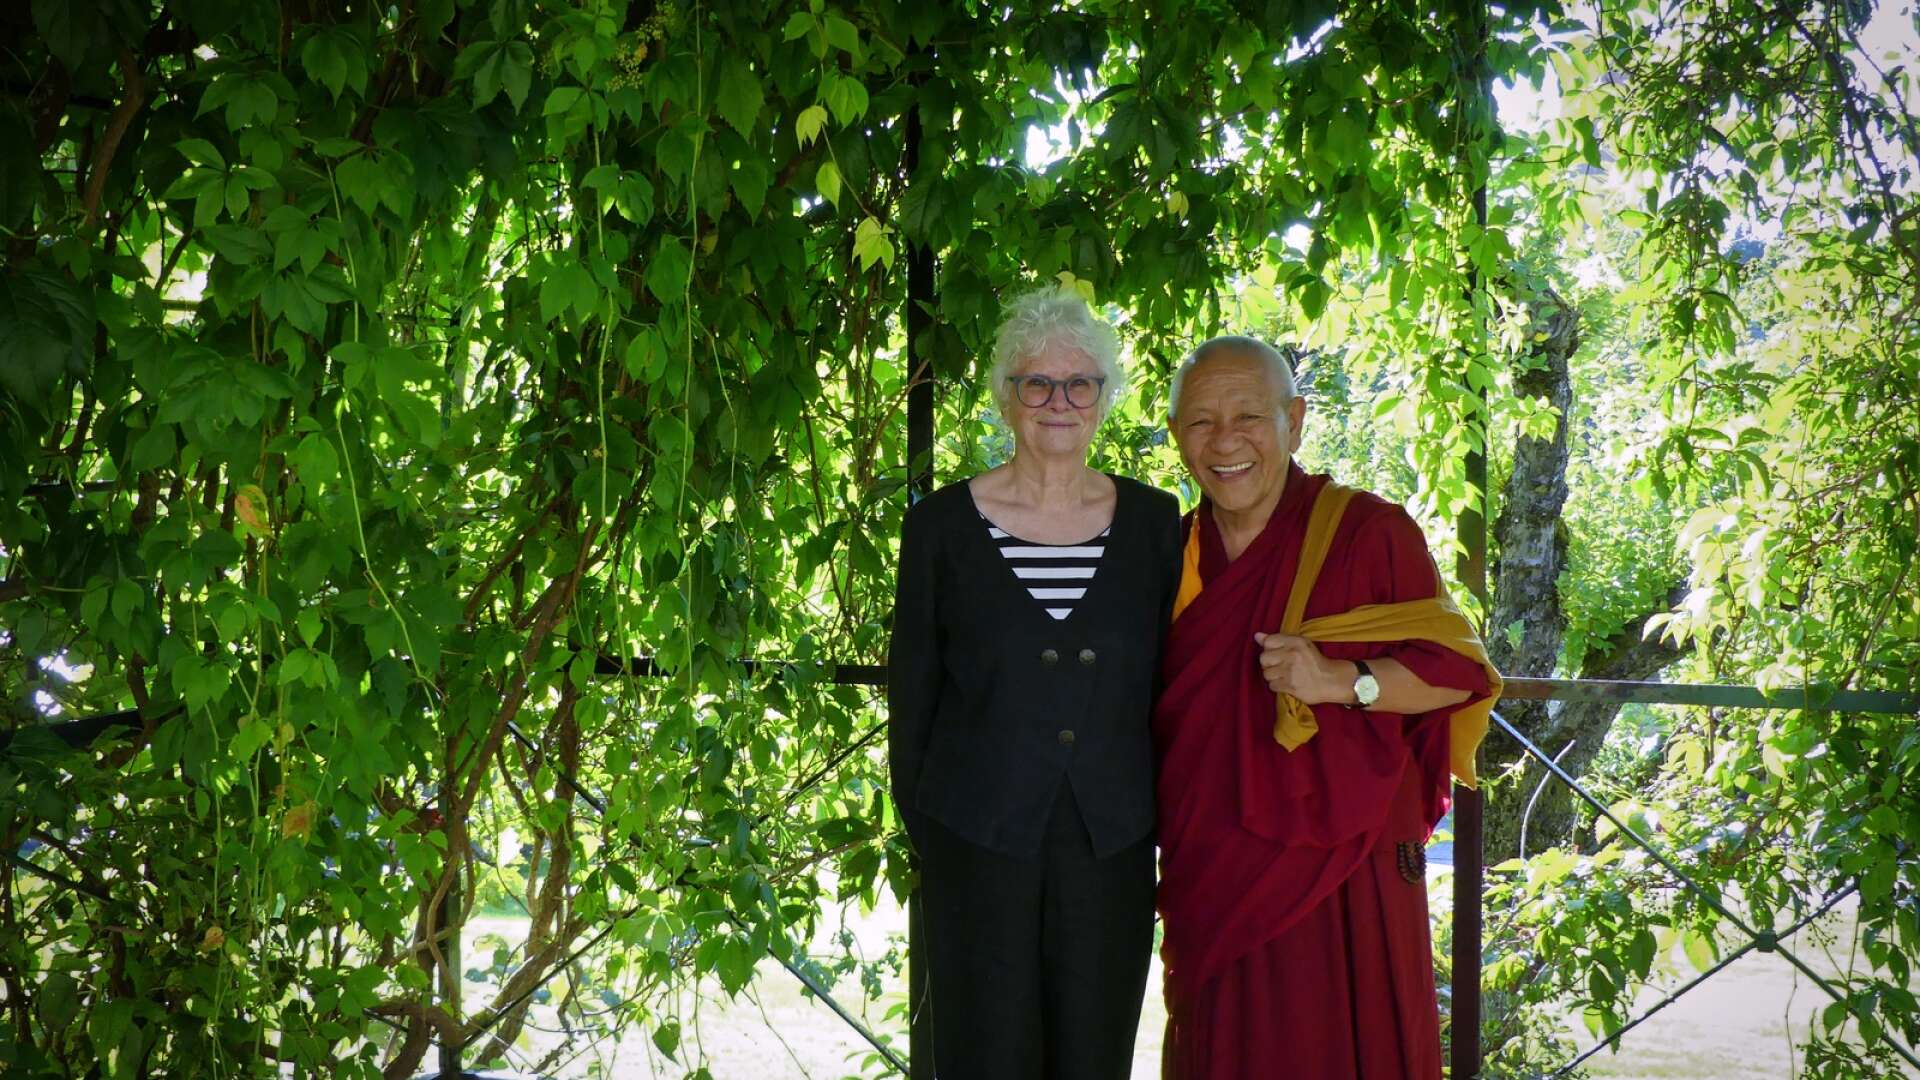 Pema Dorjee är mästare inom tibetansk buddism, hedersdoktor vid Karlstad universitet och har arbetet nära Dalai lama. Han besökte Säffle under tisdagen tillsammans med Carin Söderlind, Trinity Karlstad.